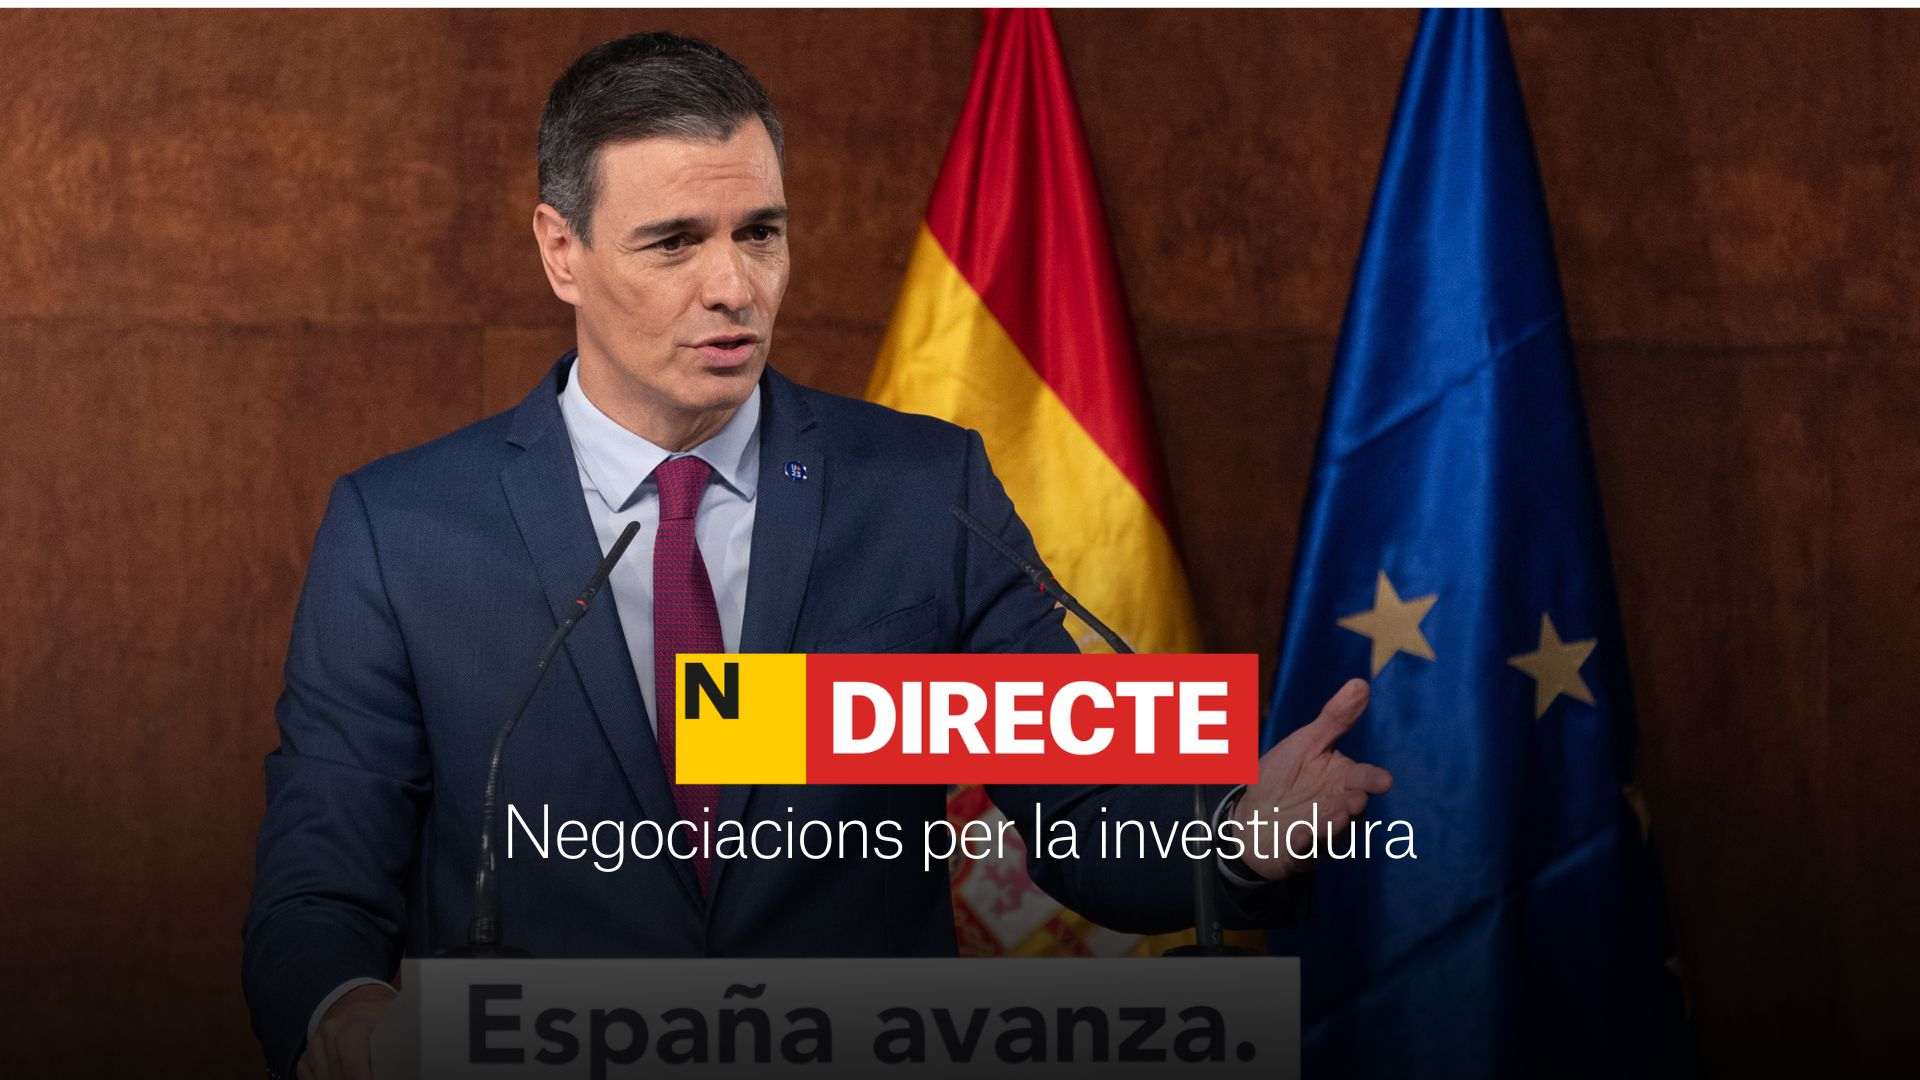 Investidura de Pedro Sánchez: negociaciones, DIRECTO | Últimas noticias del 8 de noviembre